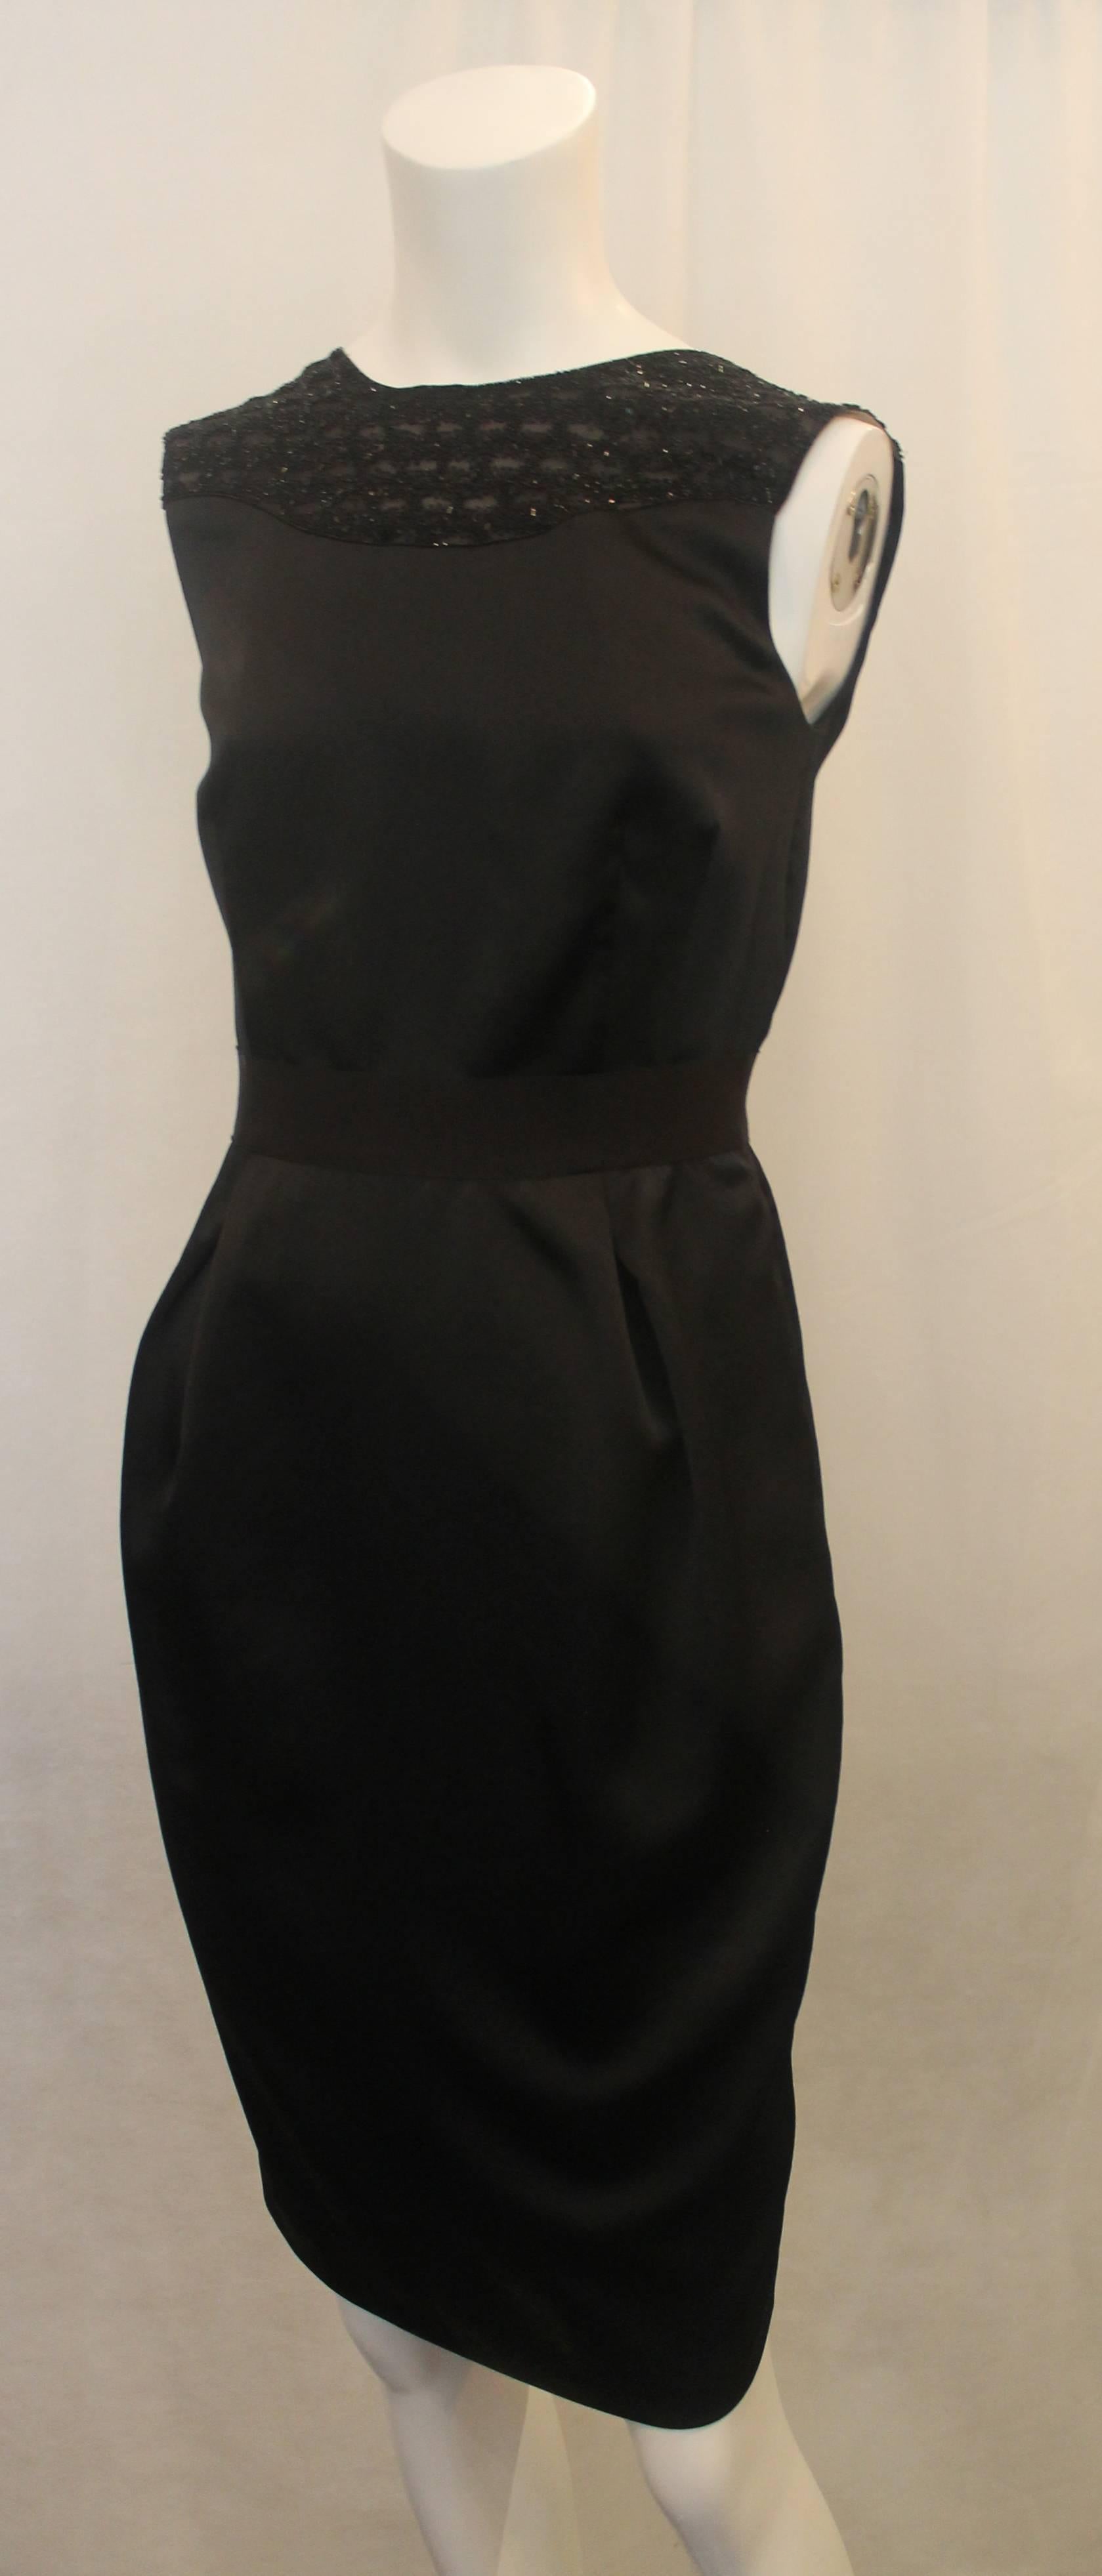 Valentino Schwarzes ärmelloses konisch zulaufendes Kleid mit Perlenbesatz Seidenkleid - S. Dieses schöne ärmellose Kleid ist konisch zulaufend, hat 2 vordere Falten und ein Grosgrainband an der Taille. Der obere Rücken hat eine offene V-Form. Der